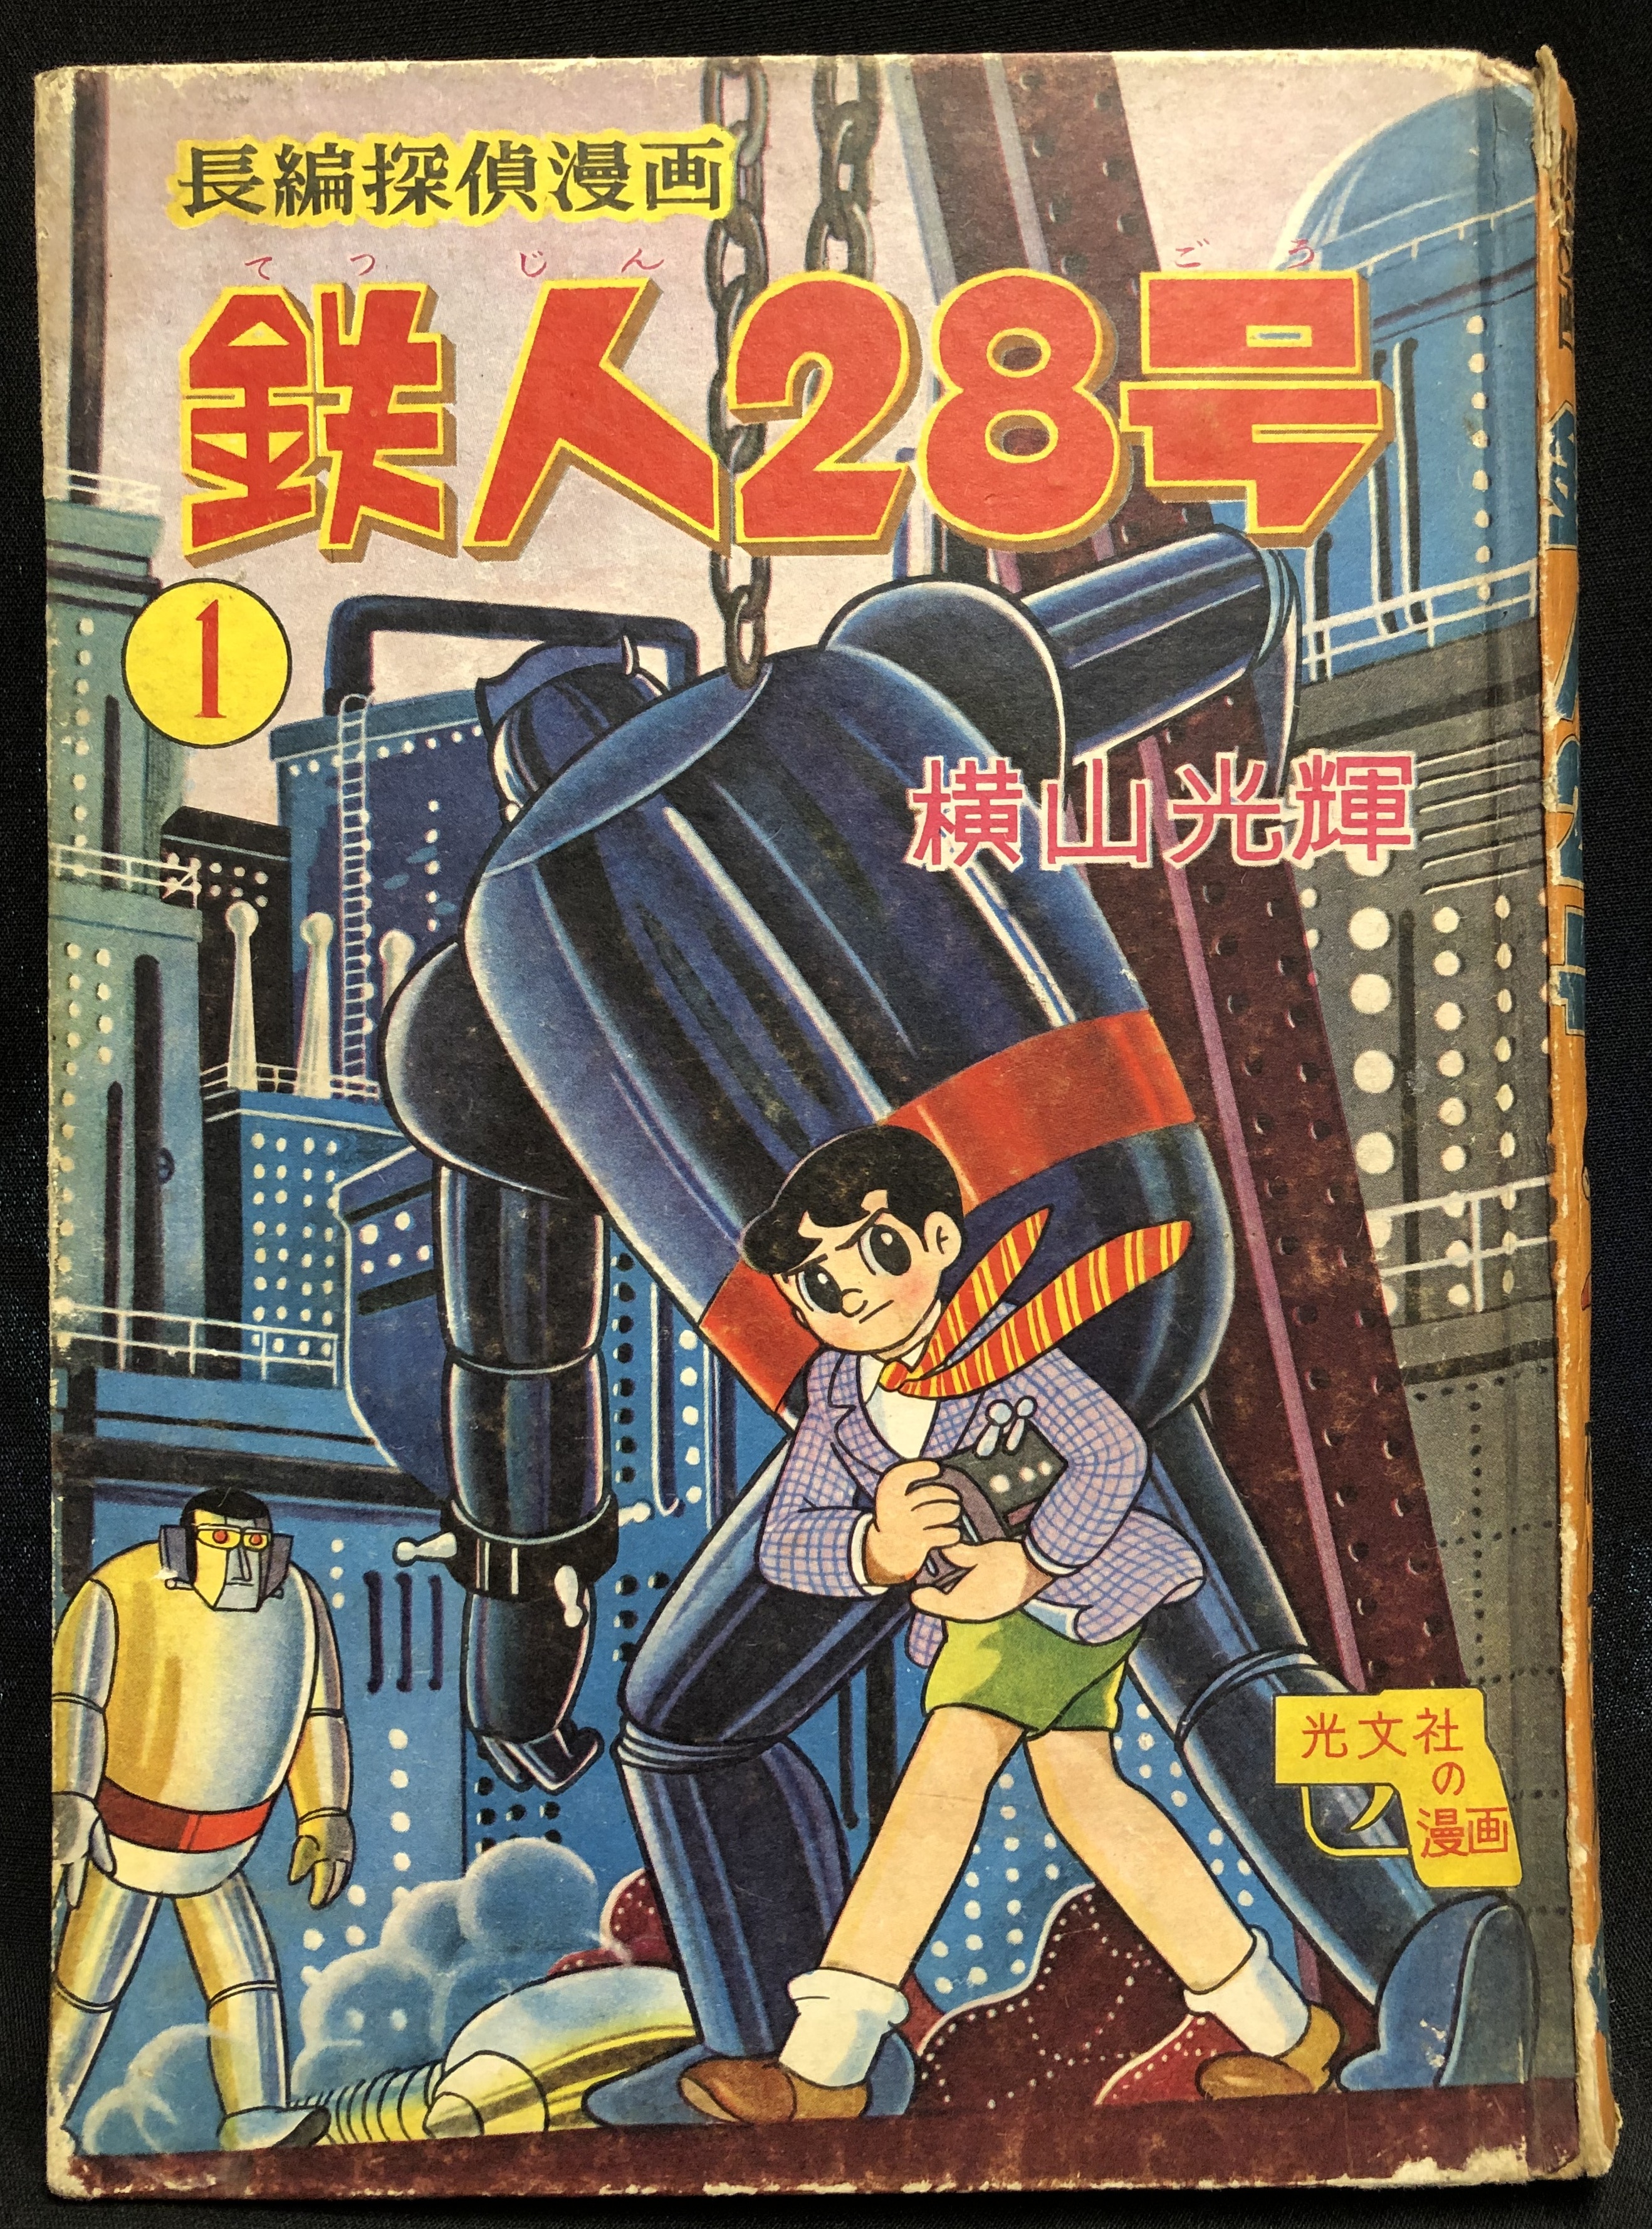 肌触りがいい 長編探偵漫画「鉄人28号」第1巻 光文社 オリジナルハード 